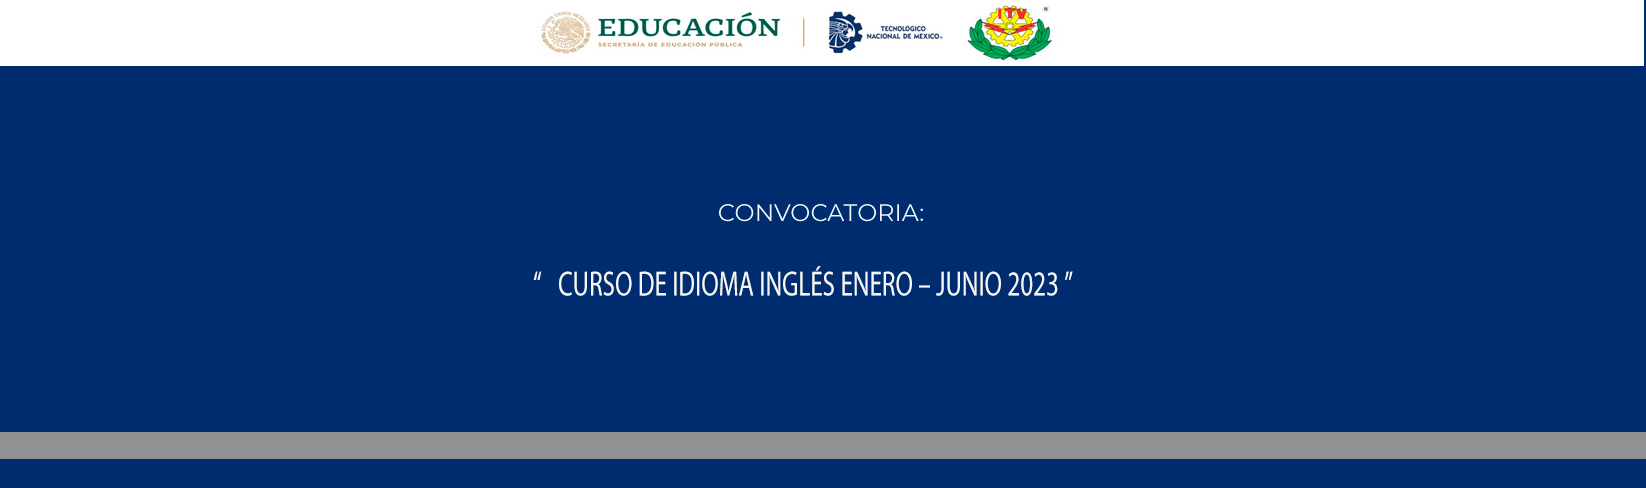 CONVOCATORIA CURSO DE IDIOMA INGLÉS ENERO – JUNIO 2023